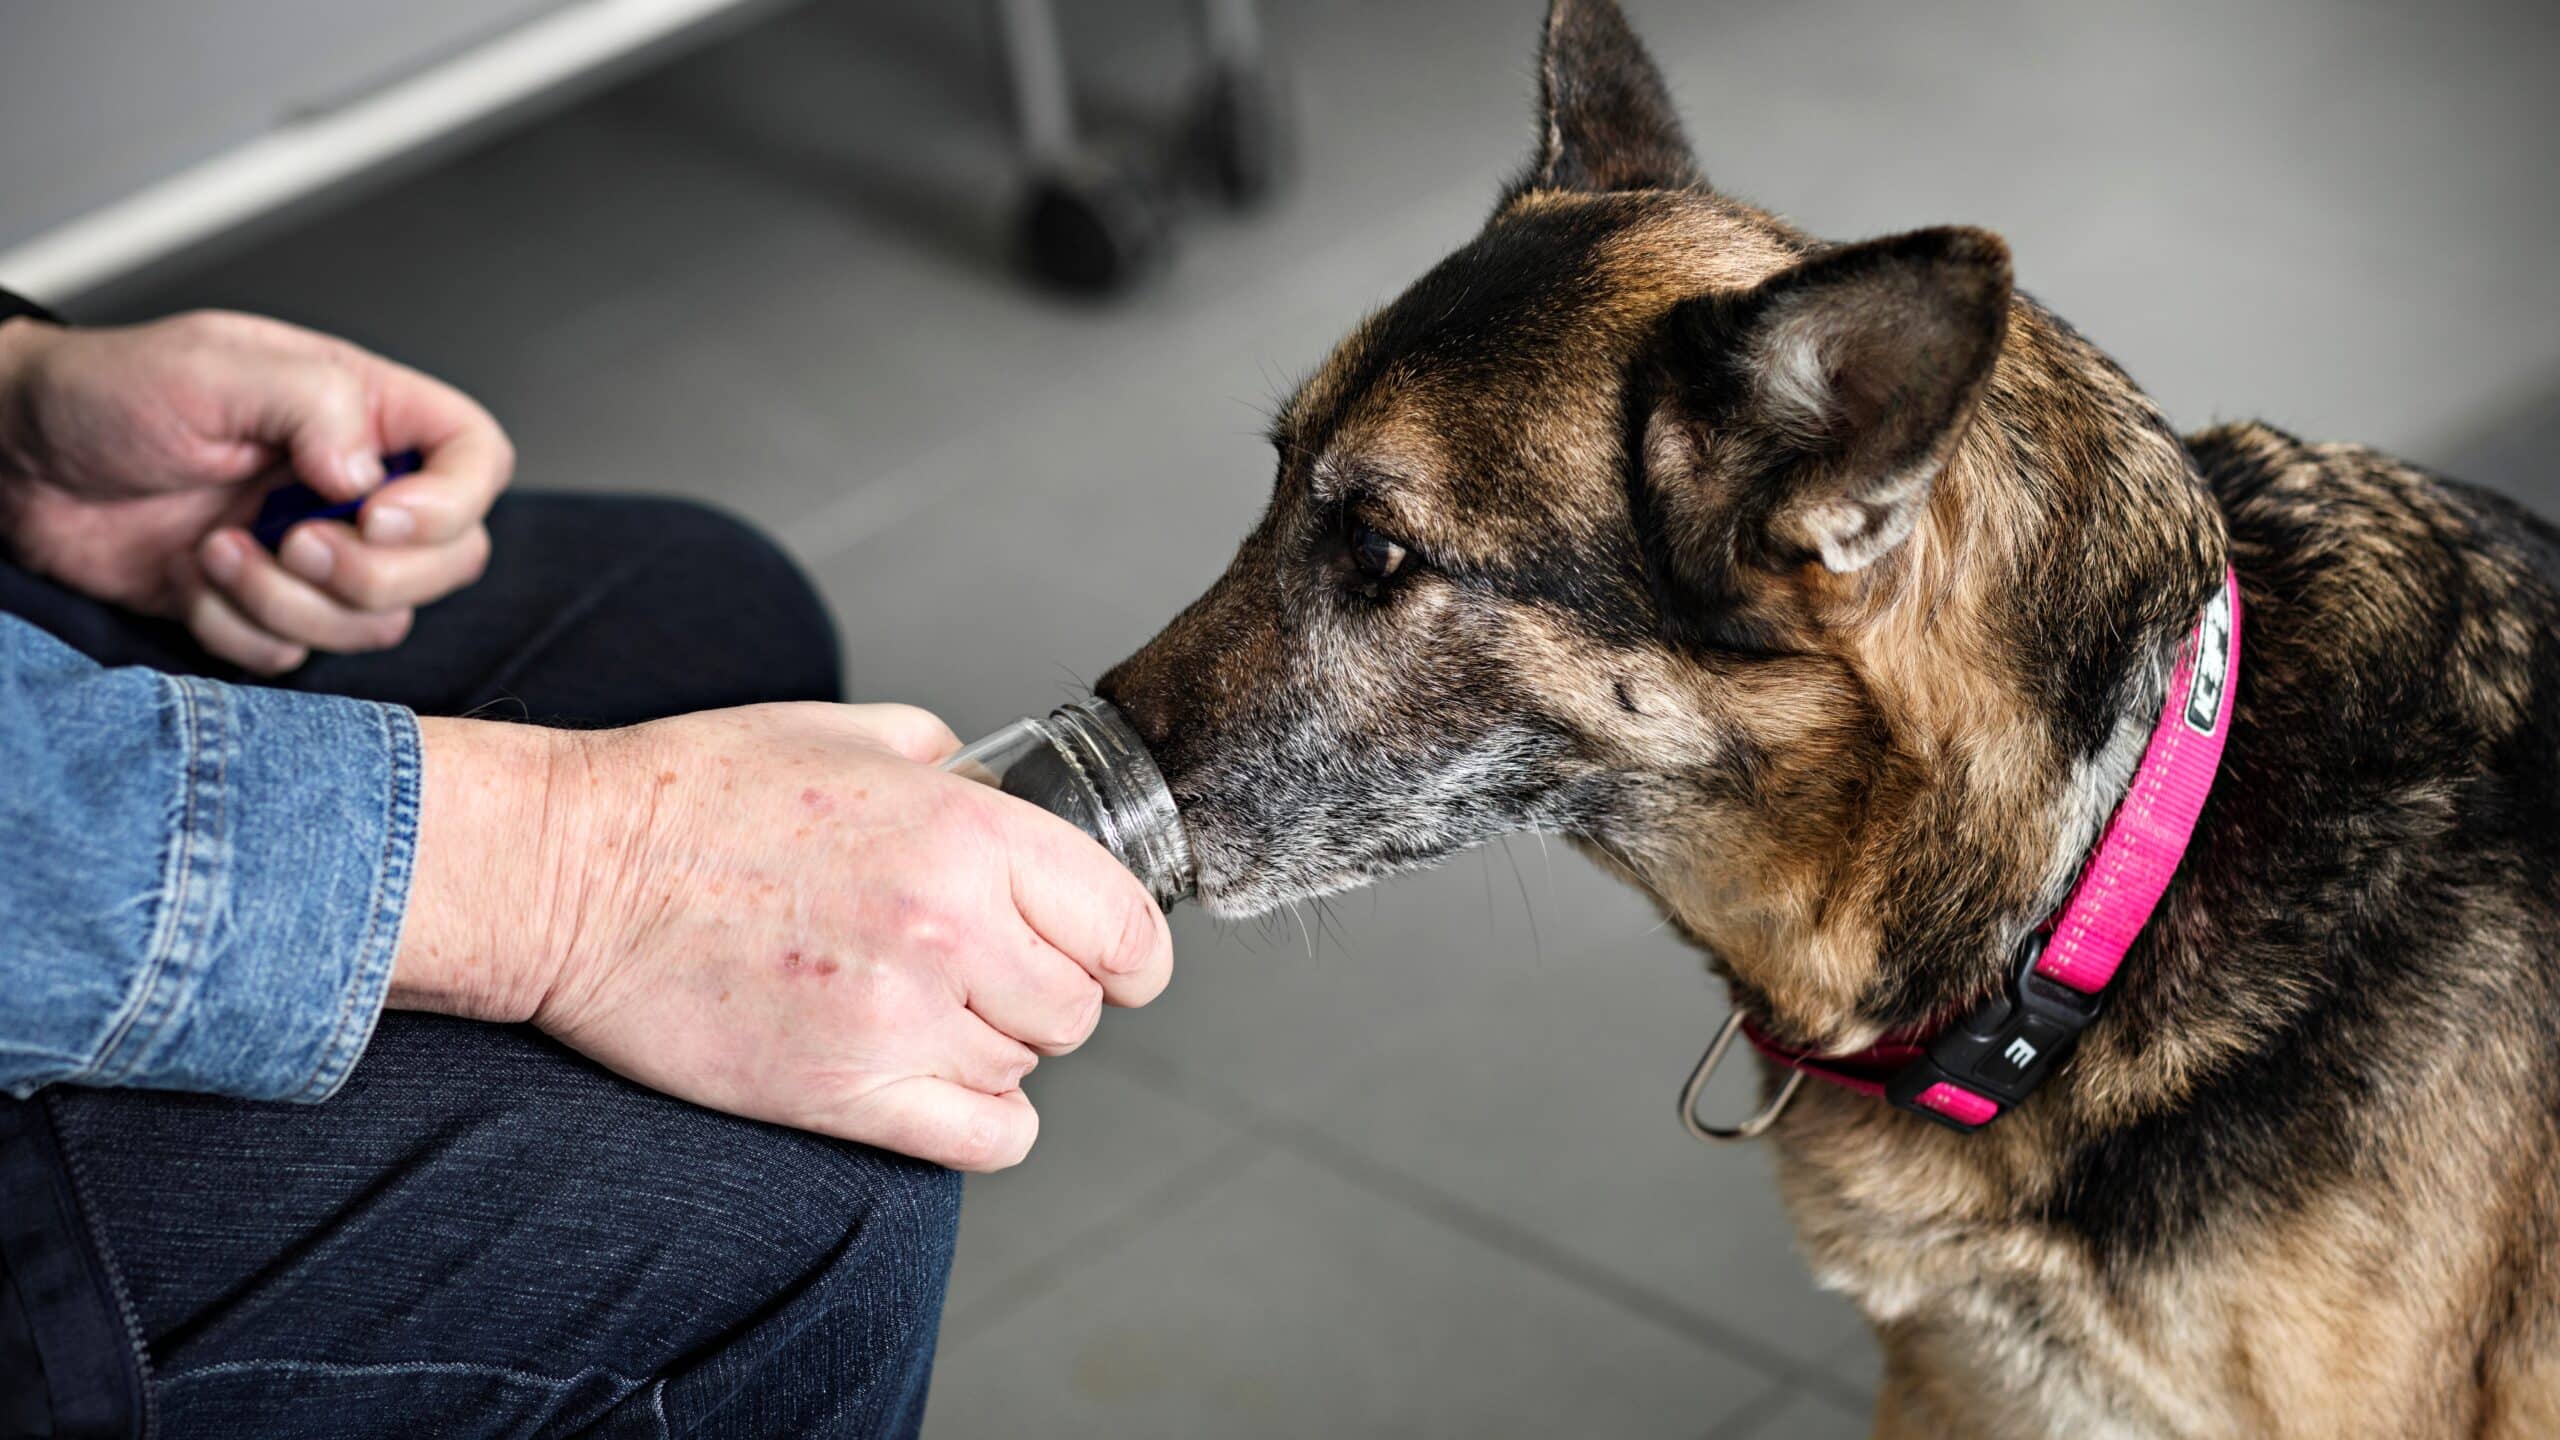 Koira haistelee lasipurkissa olevaa näytettä tunnistaakseen syövän.